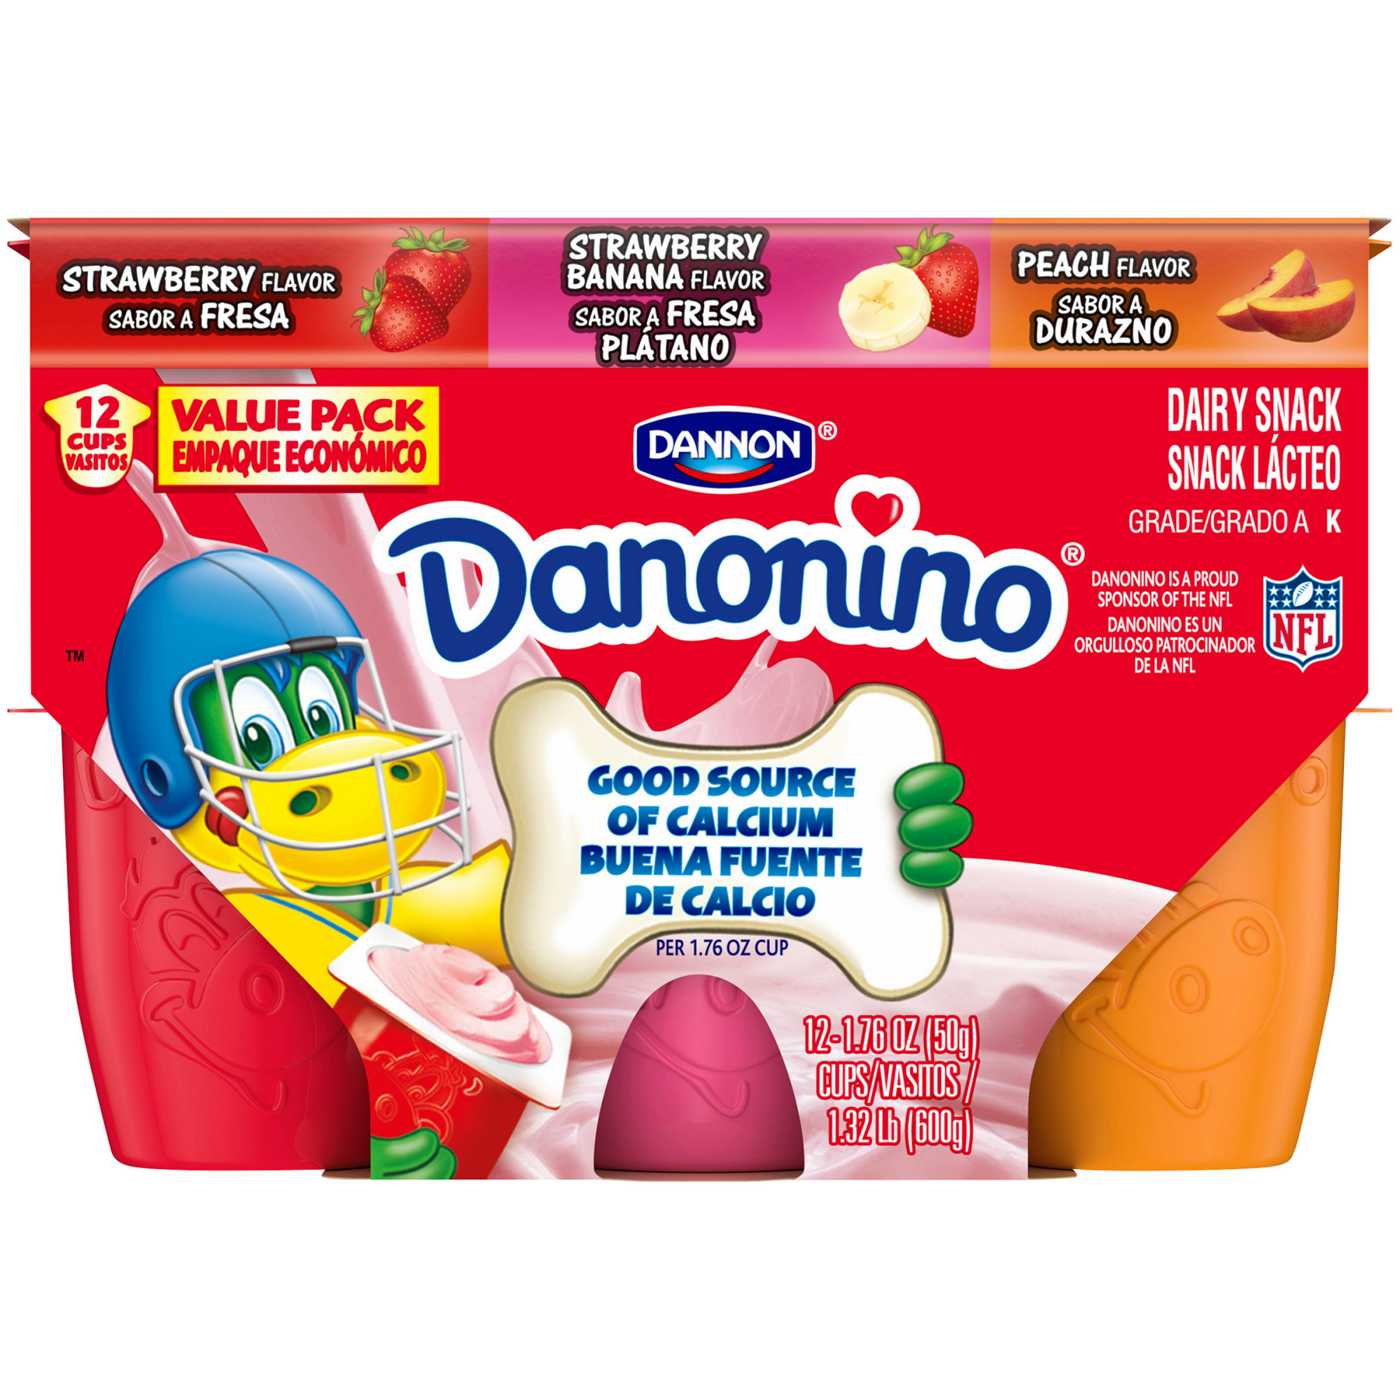 Dannon Danonino Dairy Snack Variety Pack; image 1 of 6